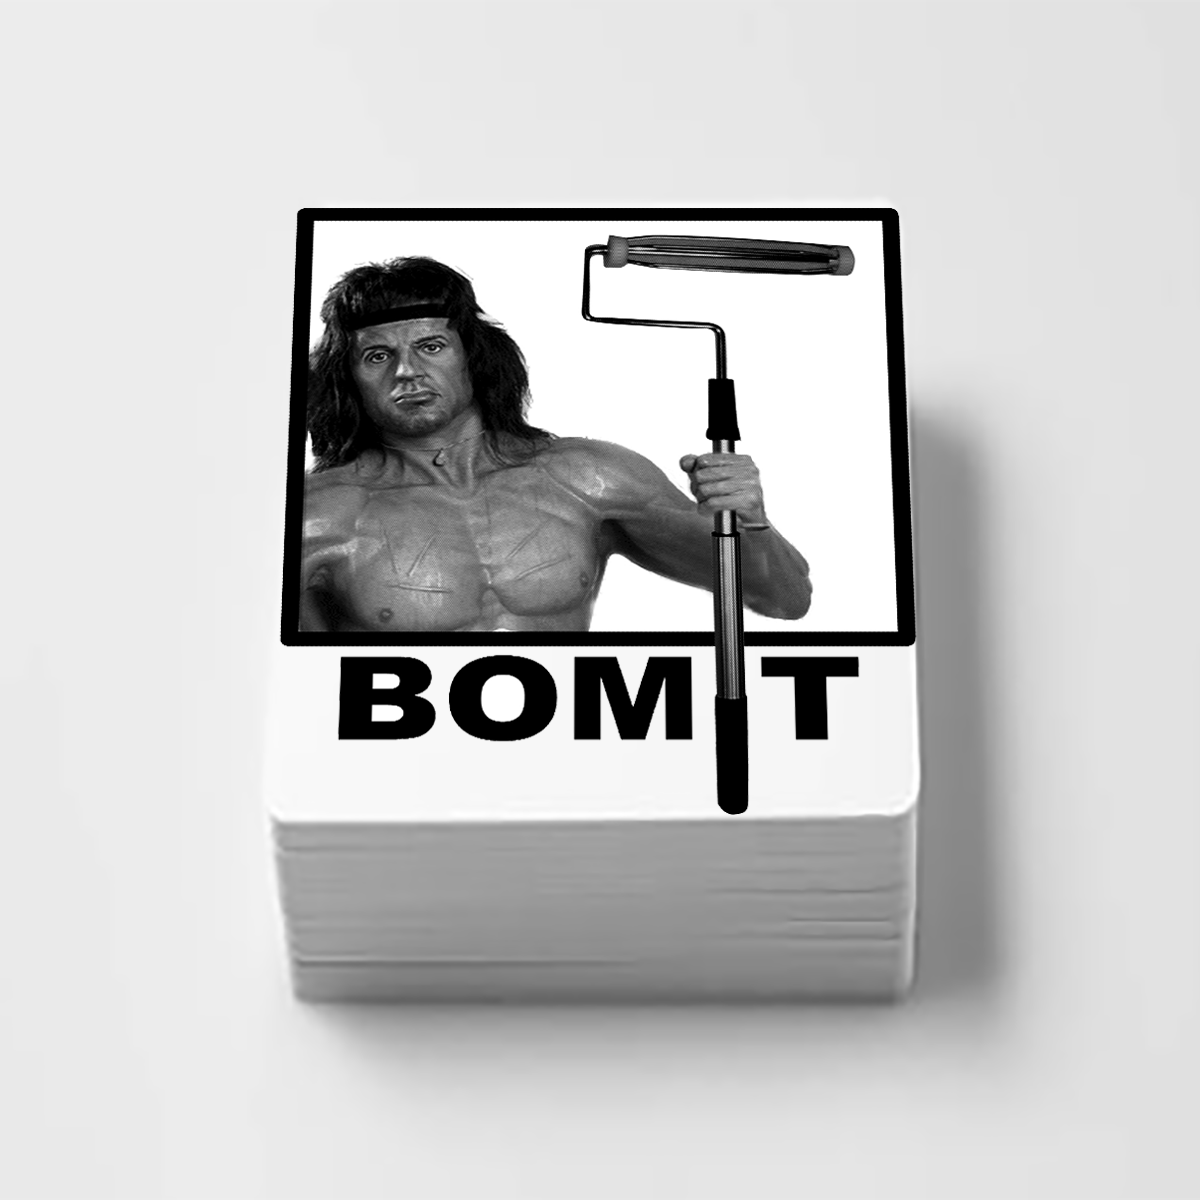 Bomit “Rambo”